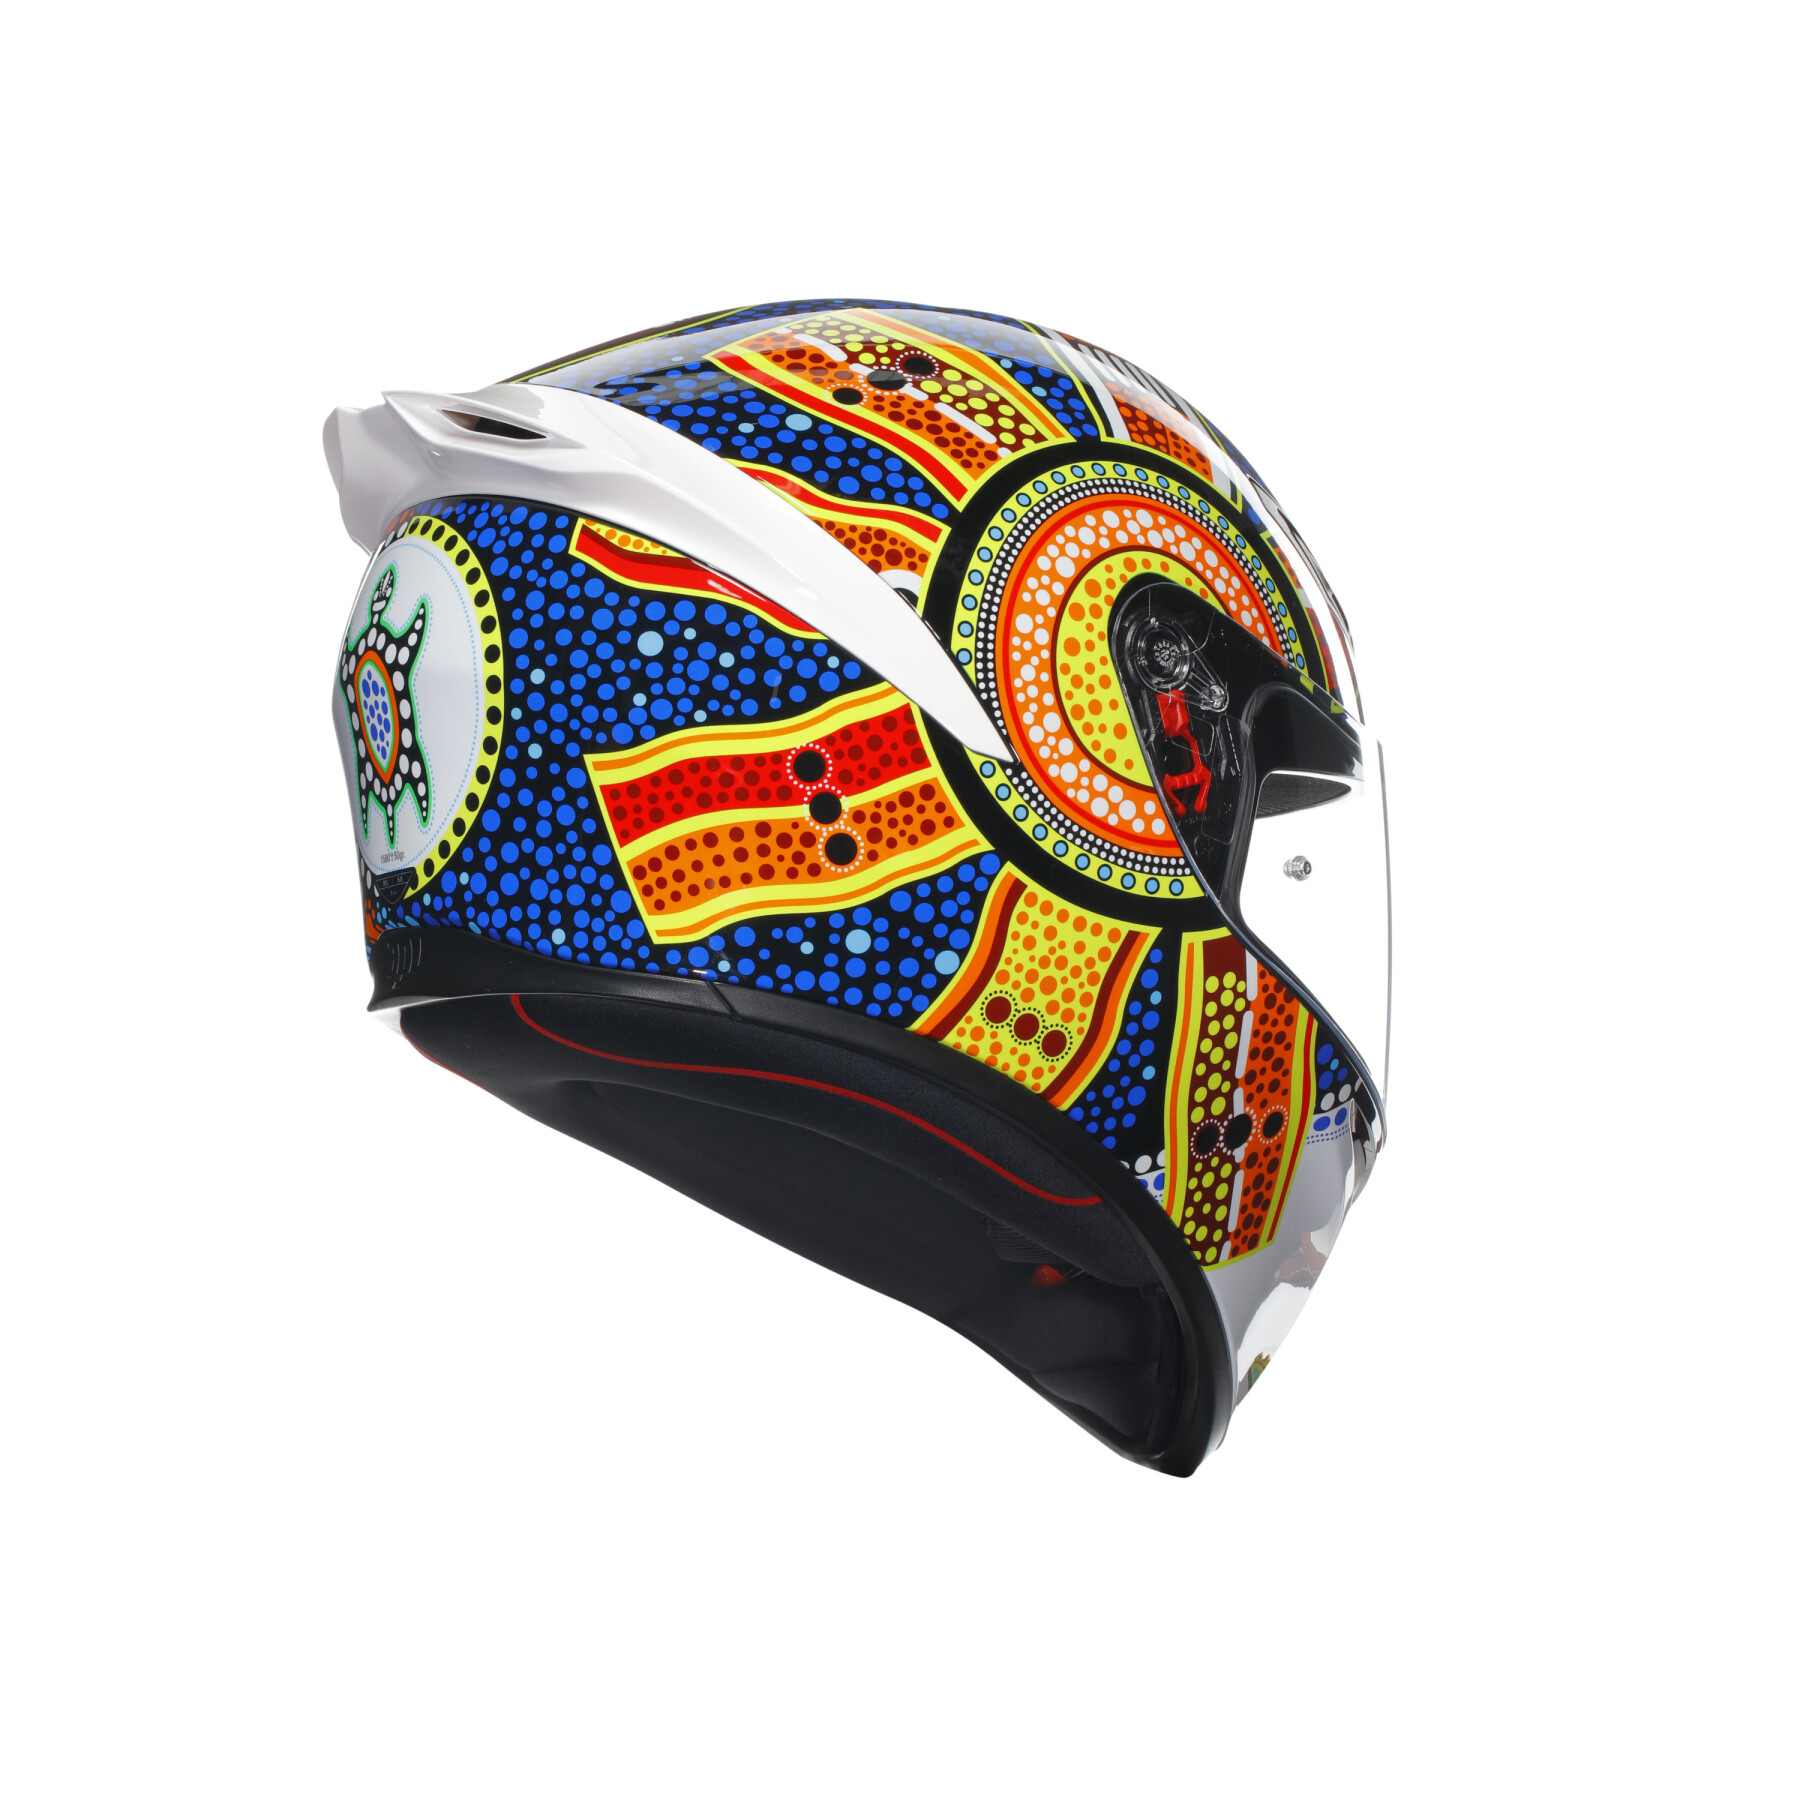 Full face motorcycle helmet AGV K1 S Dreamtime